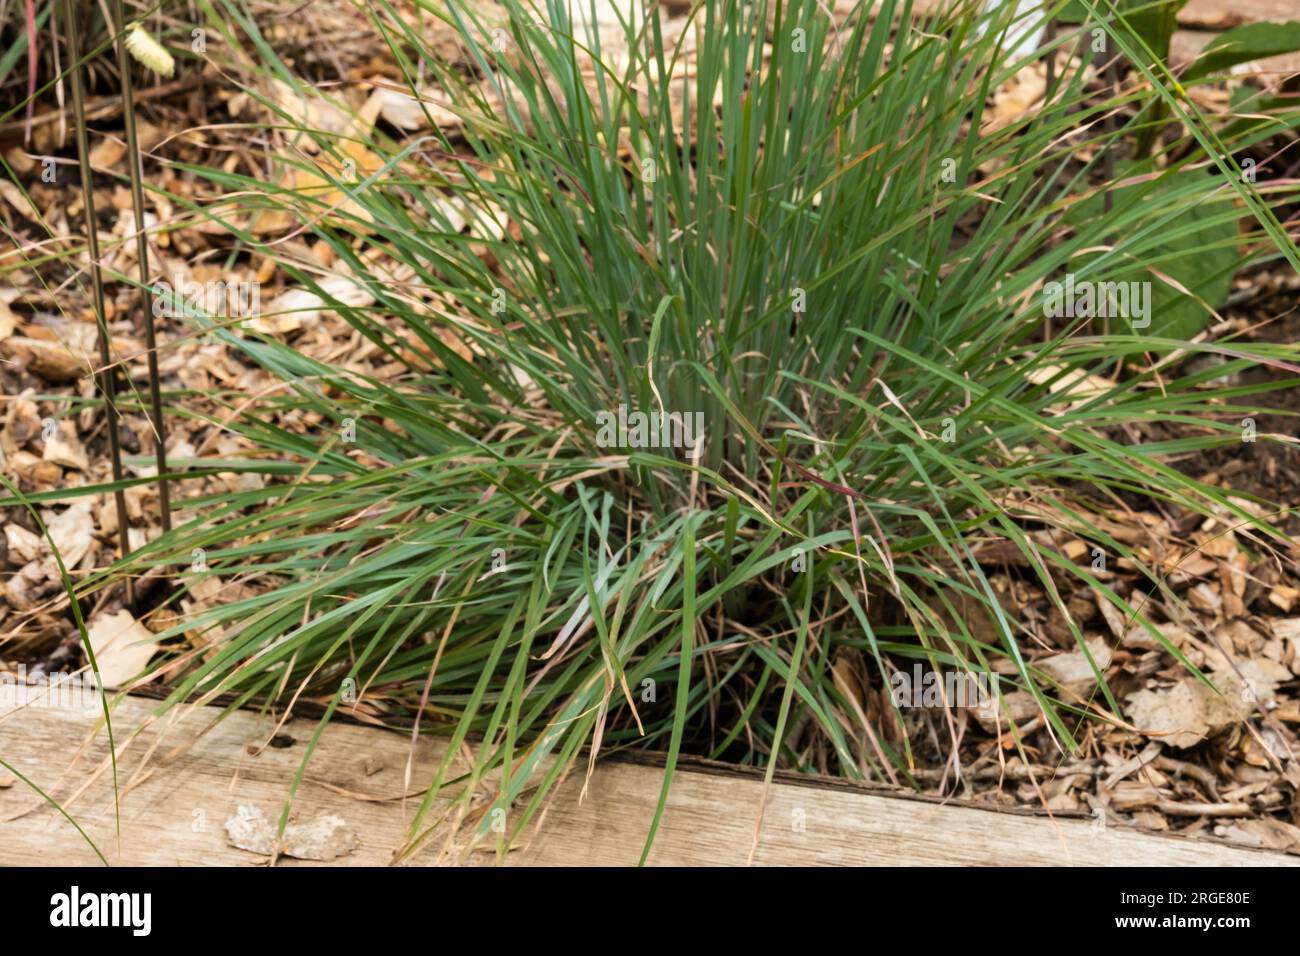 Standing Ovation Little Bluestem, Schizachyrium Scoparium, Präriegras, eine aufrechte, in den USA heimische Pflanze, die oft auf Präriegras weidet Stockfoto